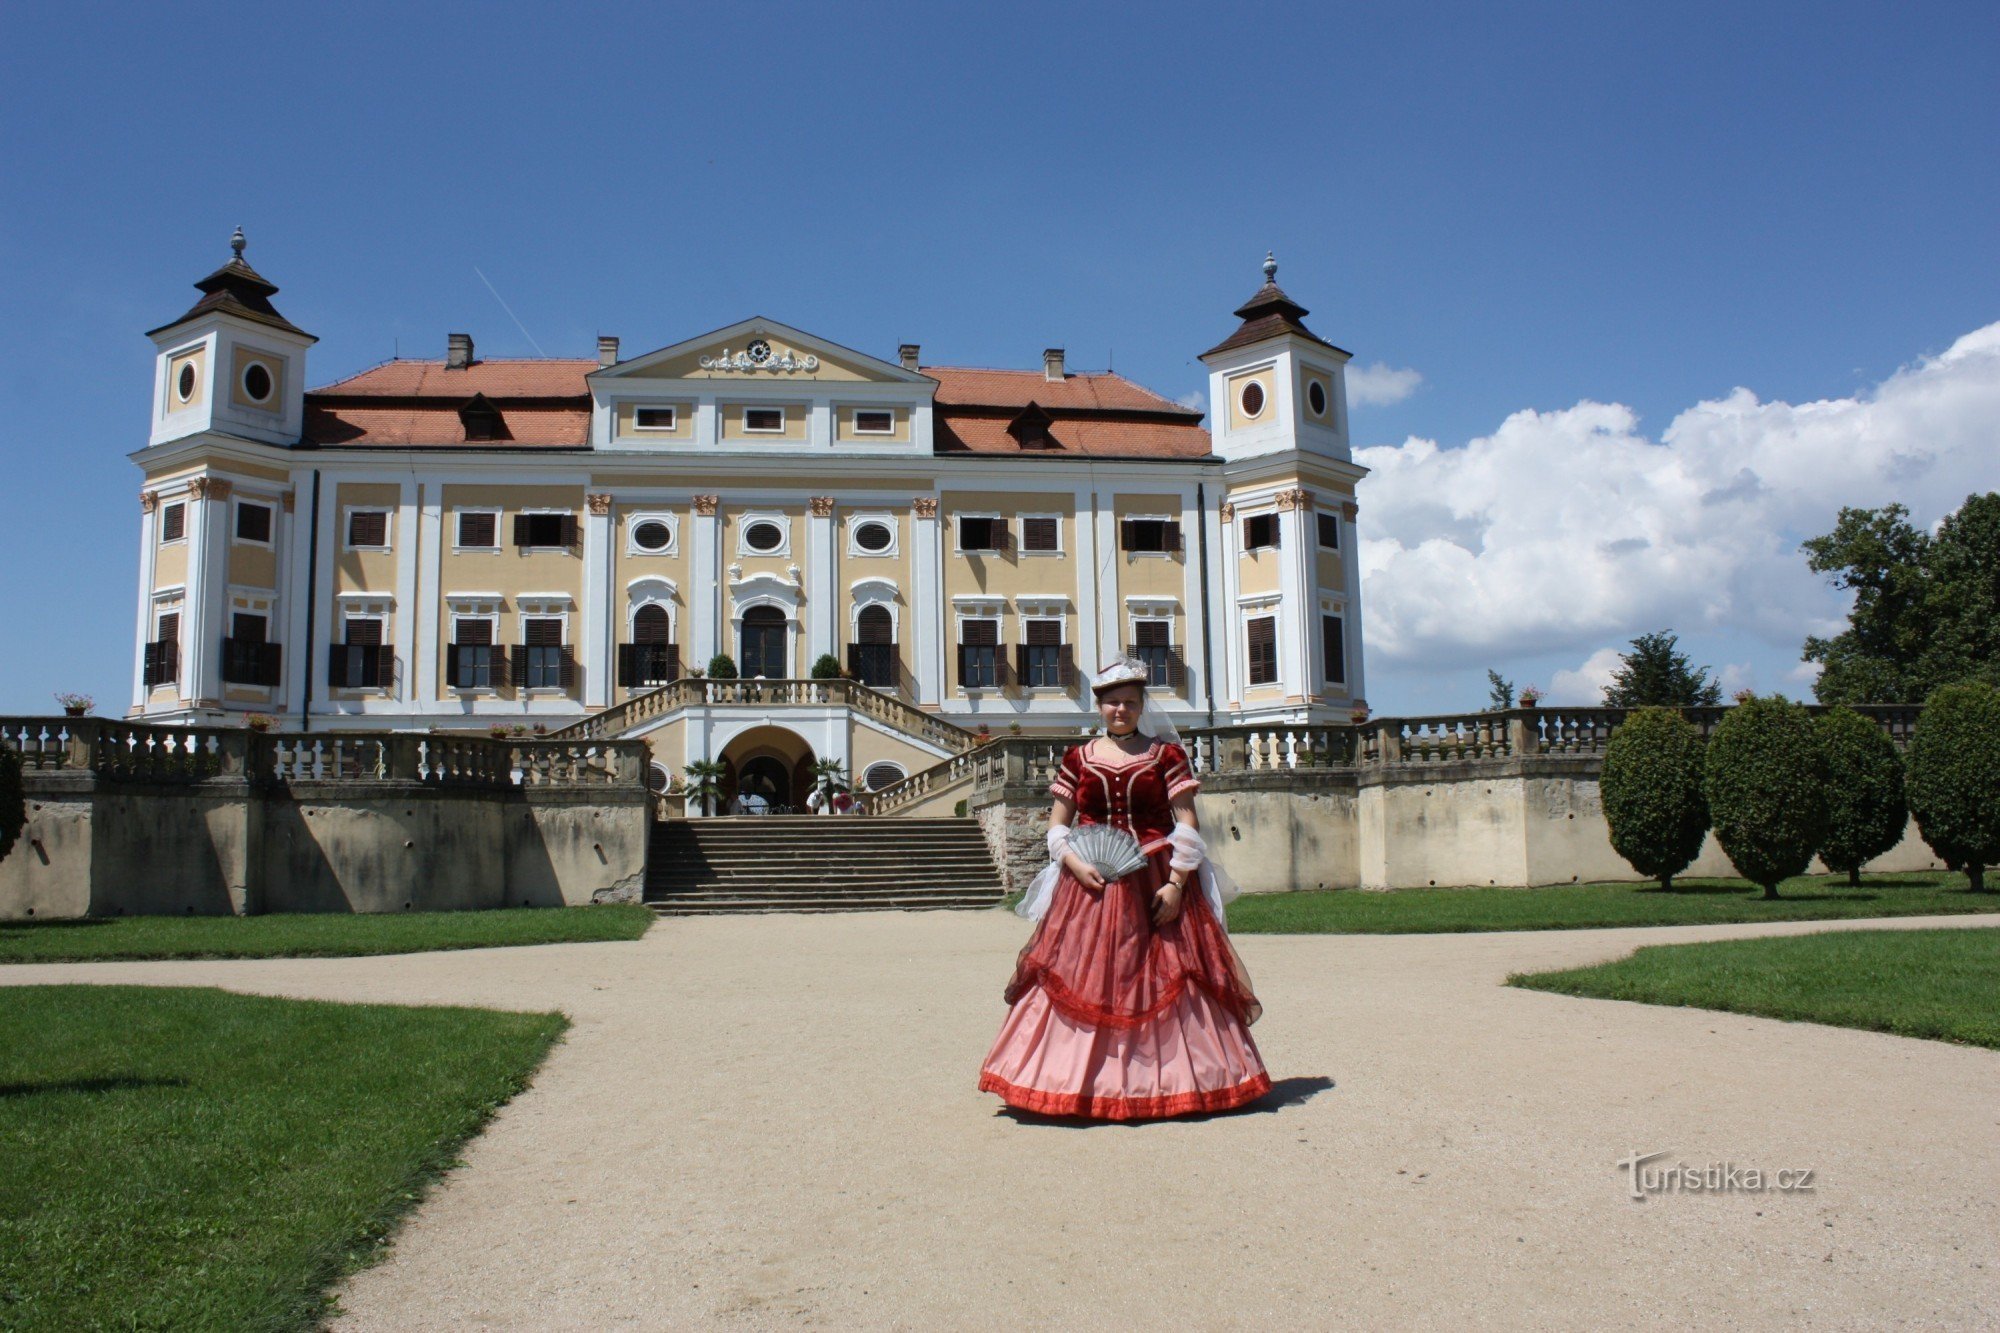 Romántico parque francés del castillo de Milotice cerca de Kyjova